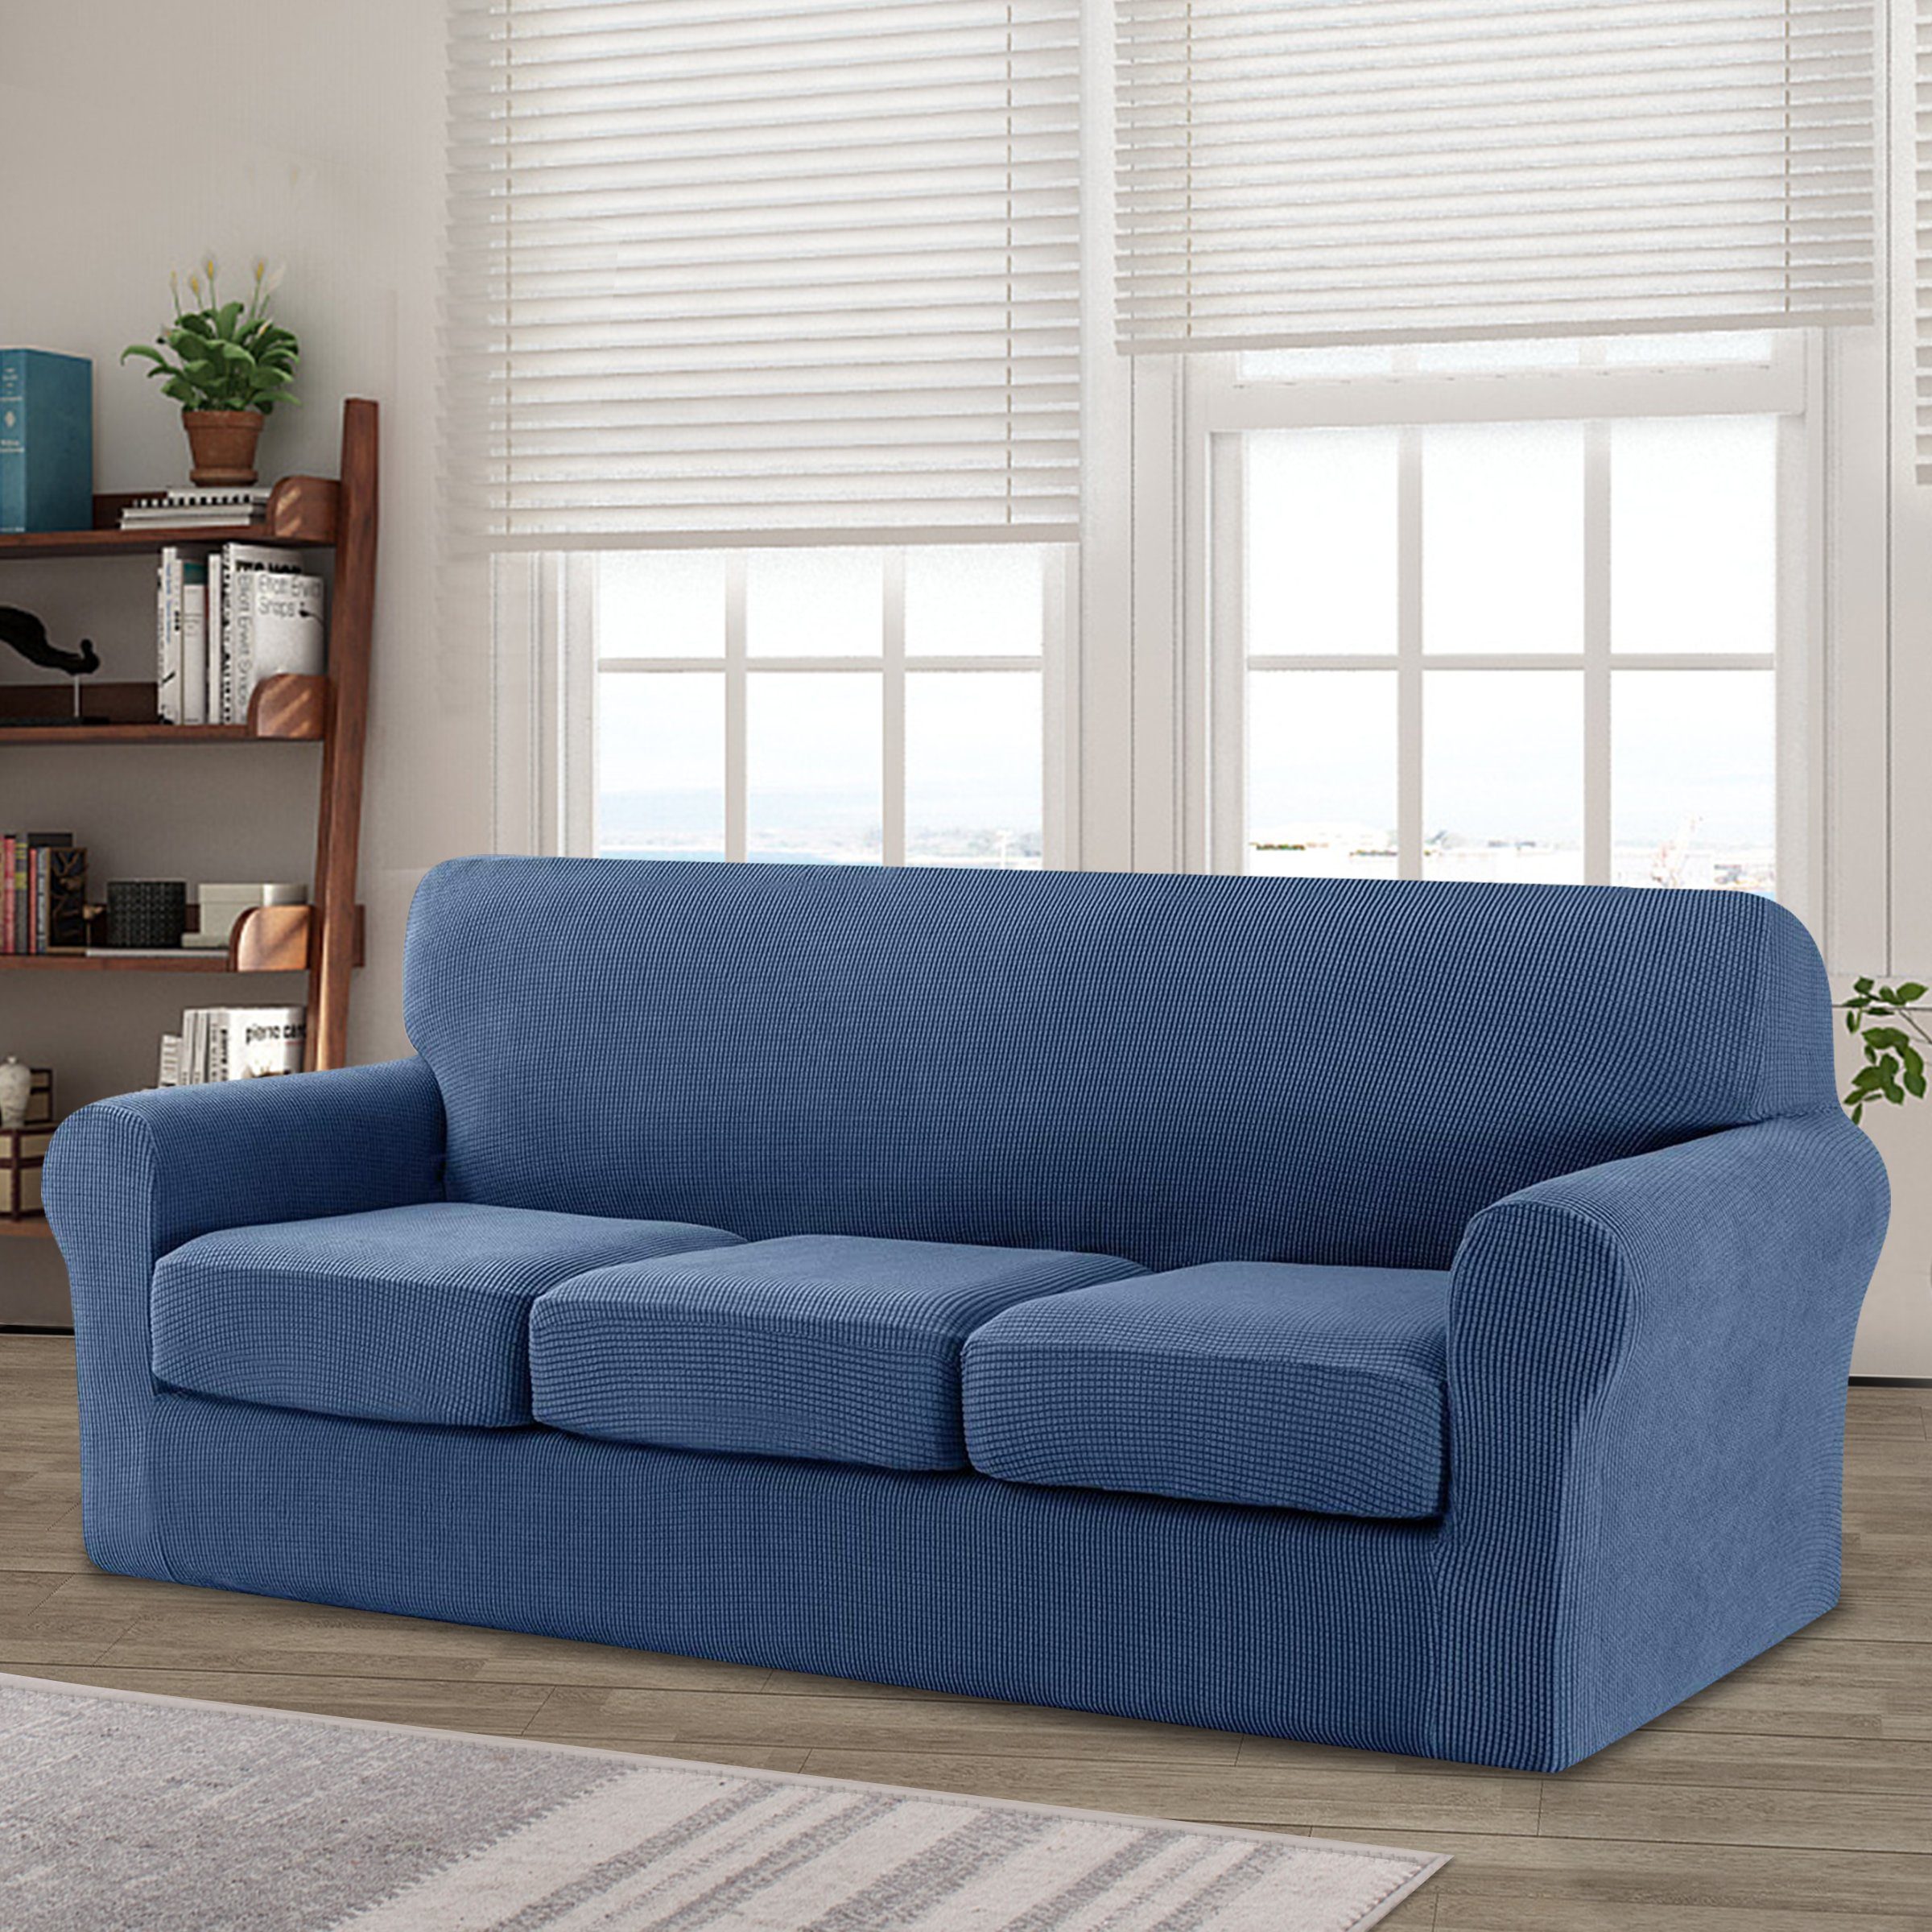 Sofahusse CHUNYI 2/3 Sitzer Sofabezug mit separaten Sofakissenbezügen, CHUNYI, mit leichtem Struktur-Effekt, mit separaten Sofakissenbezügen Denim blau